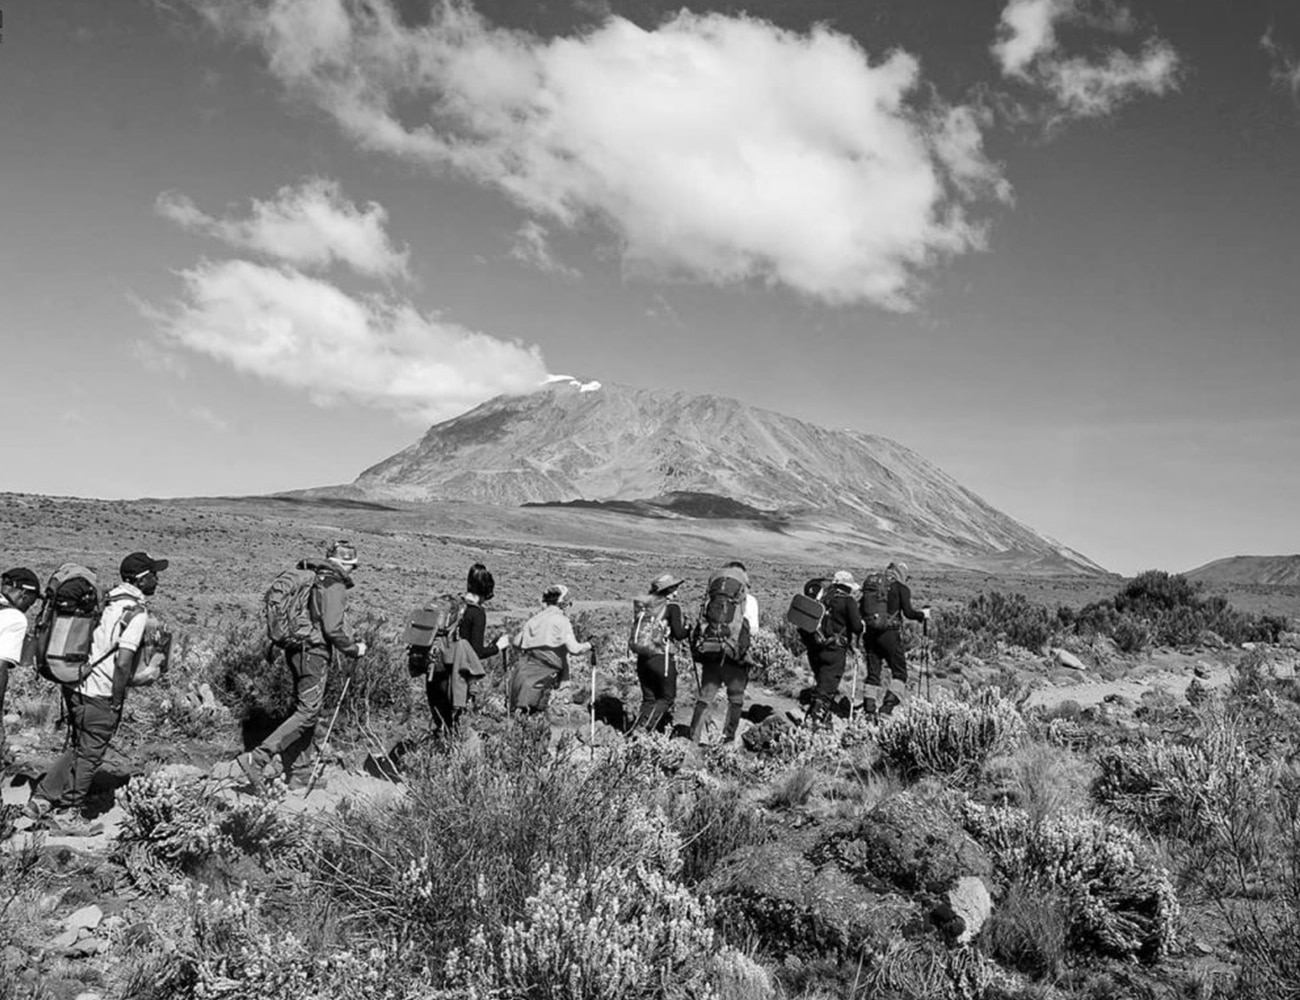 People Climbing Mount Kilimanjaro